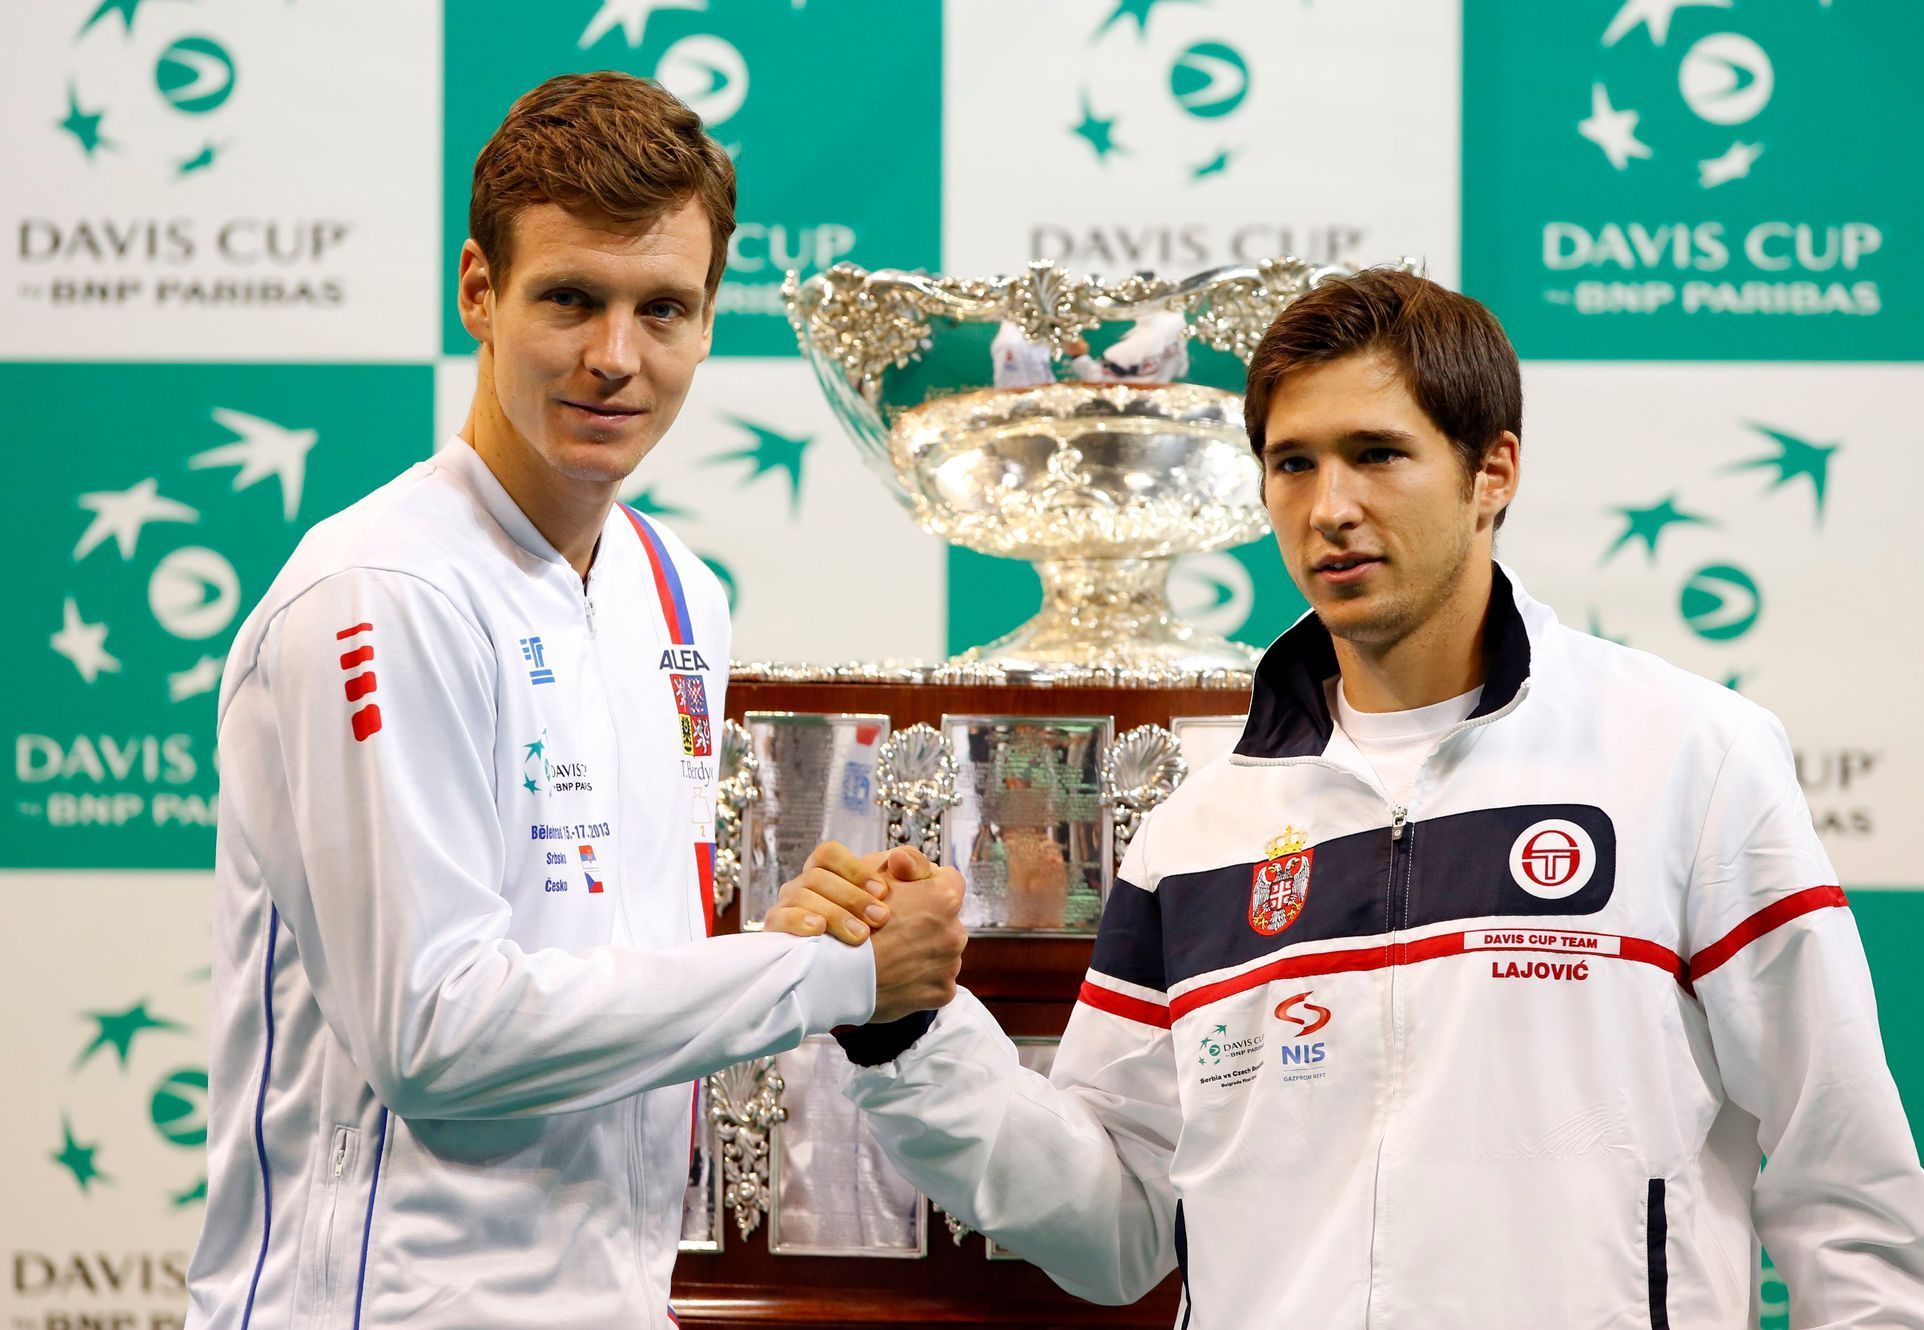 Finále Davis Cupu 2013 (Berdych, lajovič)